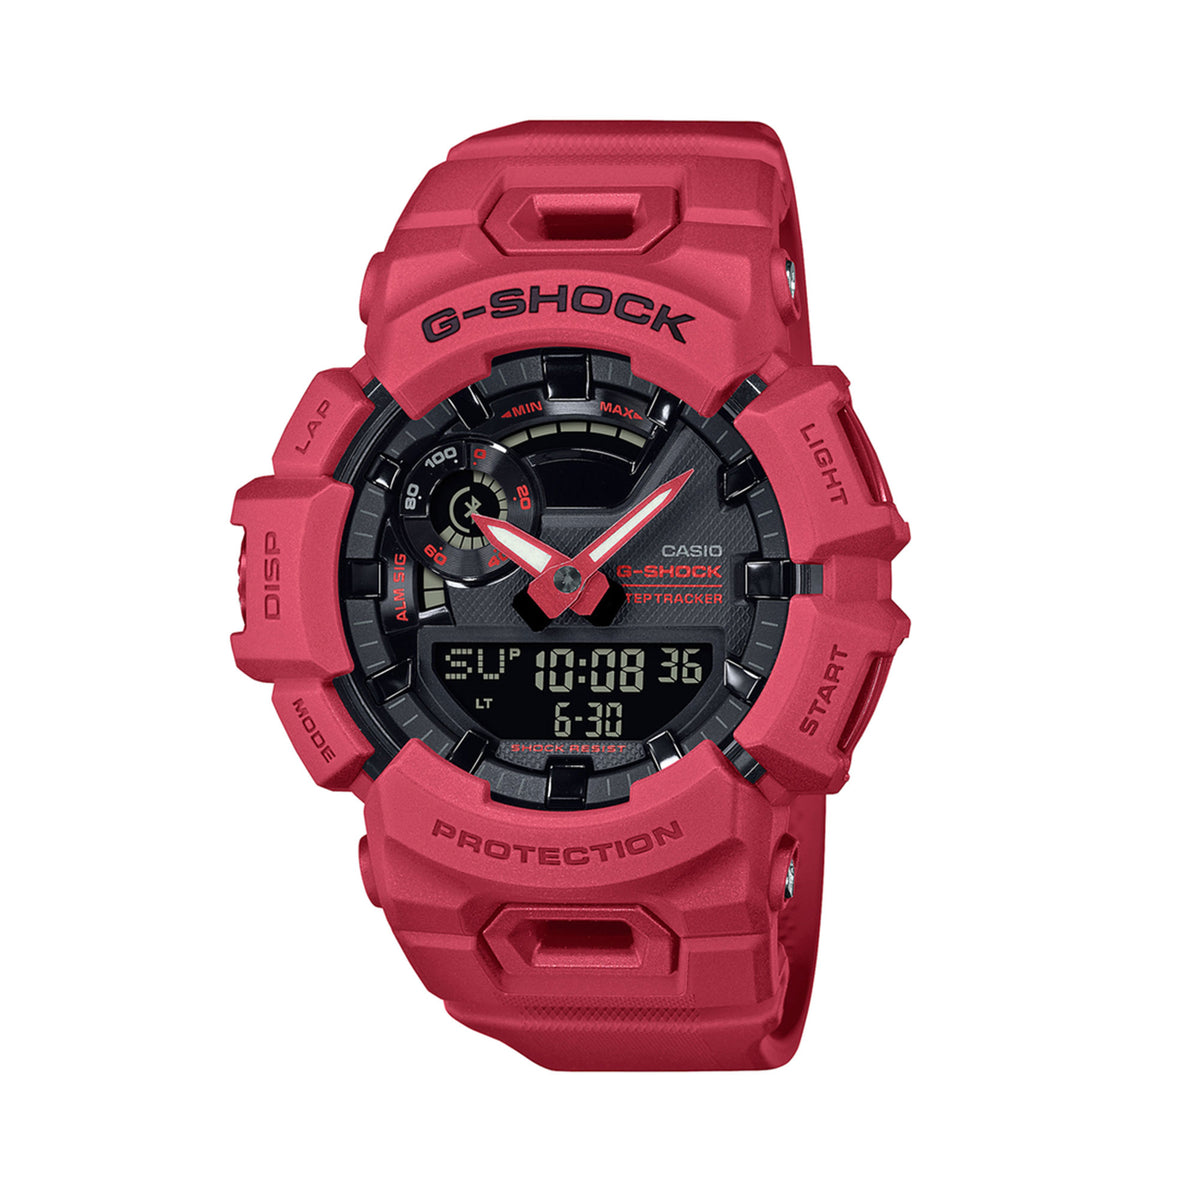 Casio Men's G-SHOCK Analogue Digital Watch GA700-4A